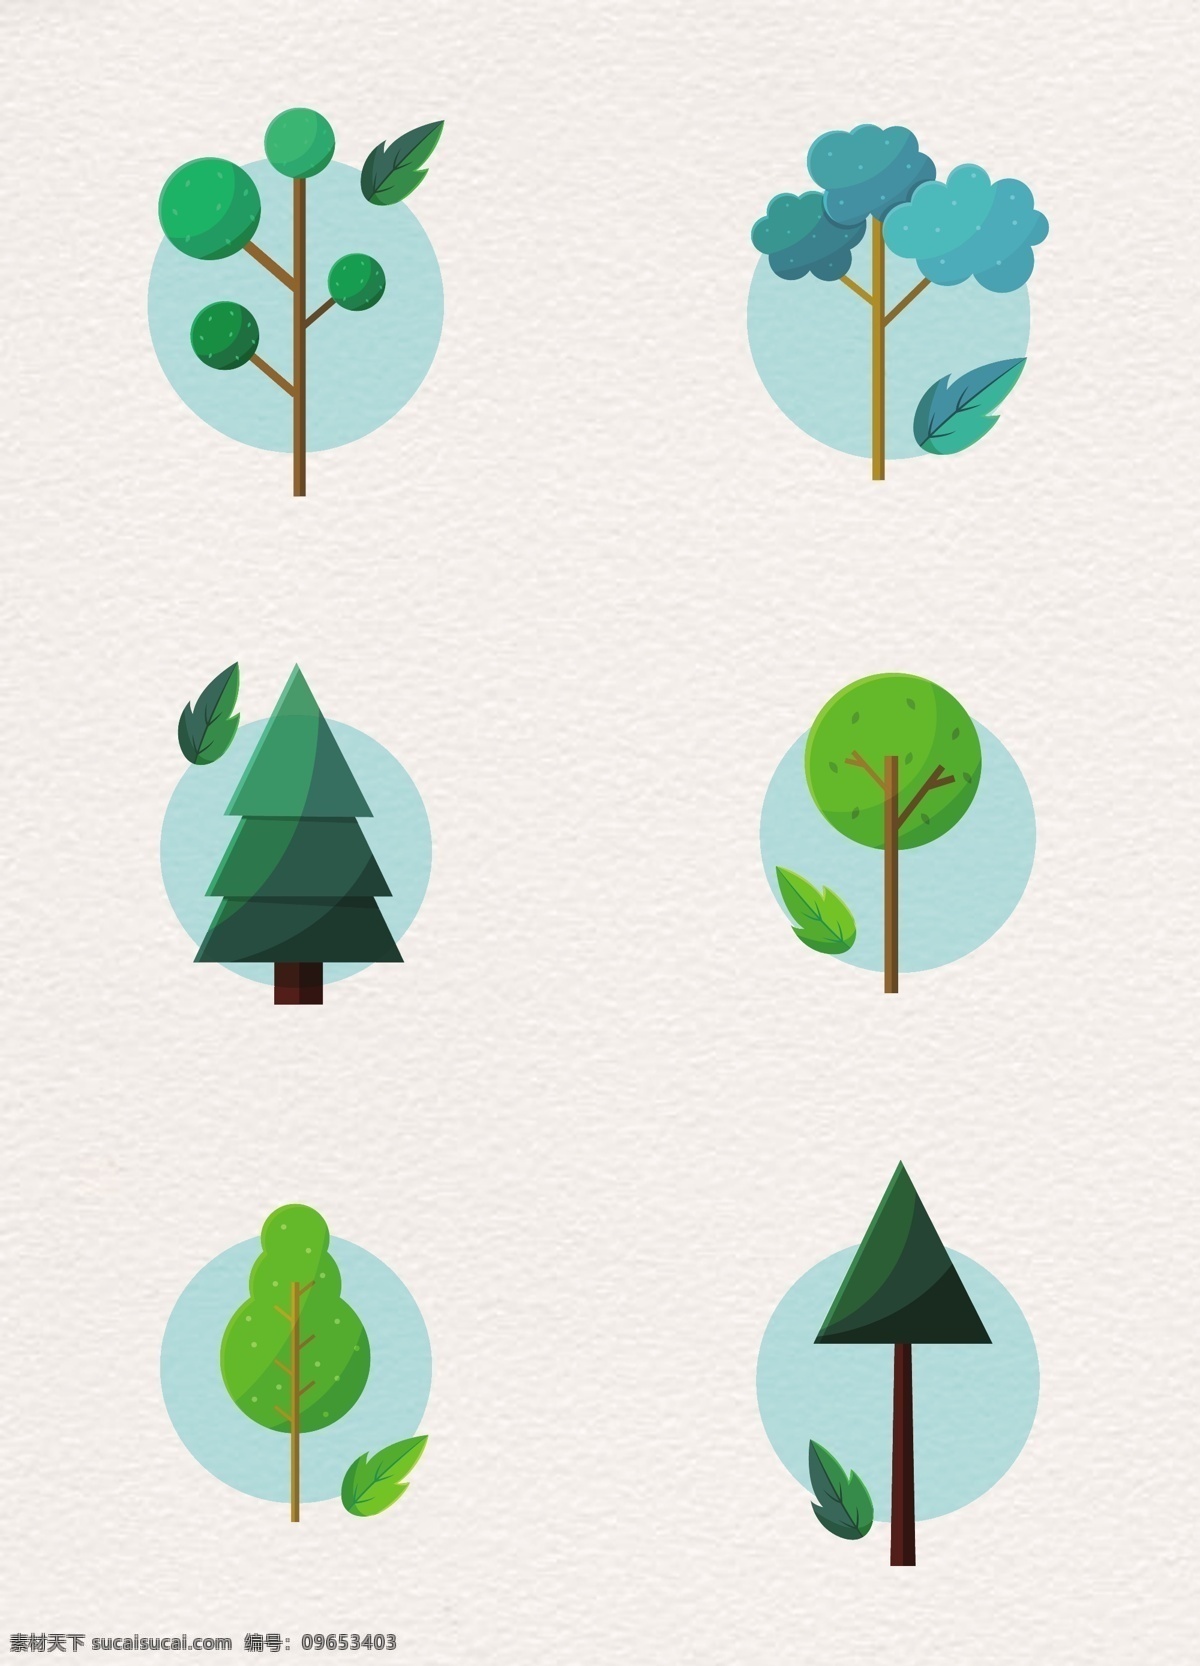 蓝绿 清新 树木 元素 合集 蓝绿色 卡通 植物图标 树木图标 树木元素 植物元素 可爱树木